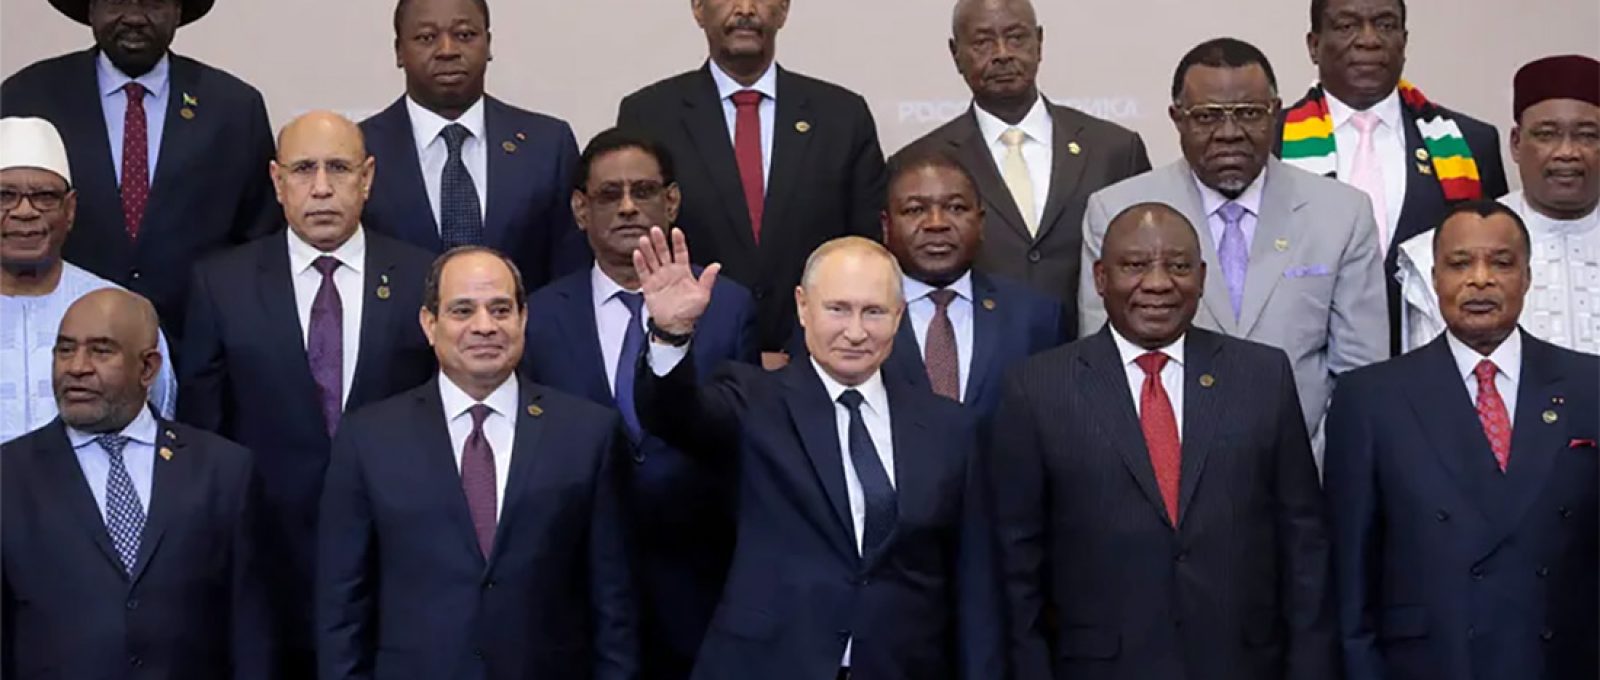 O presidente da Rússia, Vladimir Putin, acena durante uma "foto de família" com chefes de países participantes da Cúpula Rússia-África de 2019 em Sochi (Reuters).